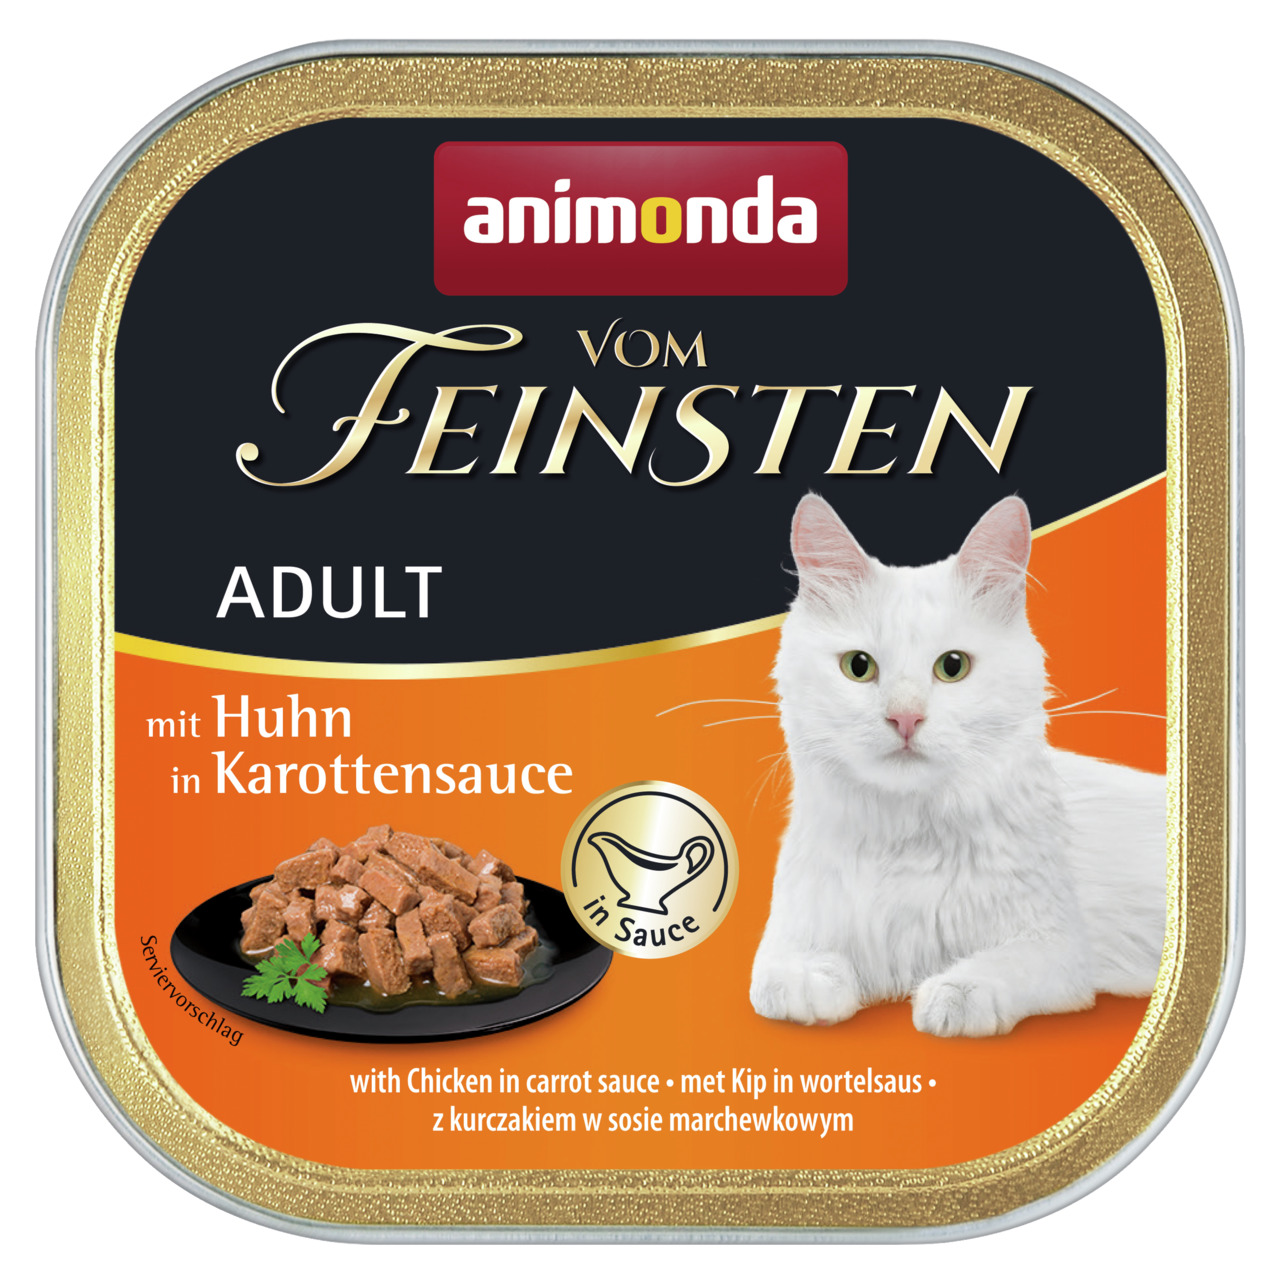 Animonda vom Feinsten Adult mit Huhn in Karottensauce Katzen Nassfutter 100 g